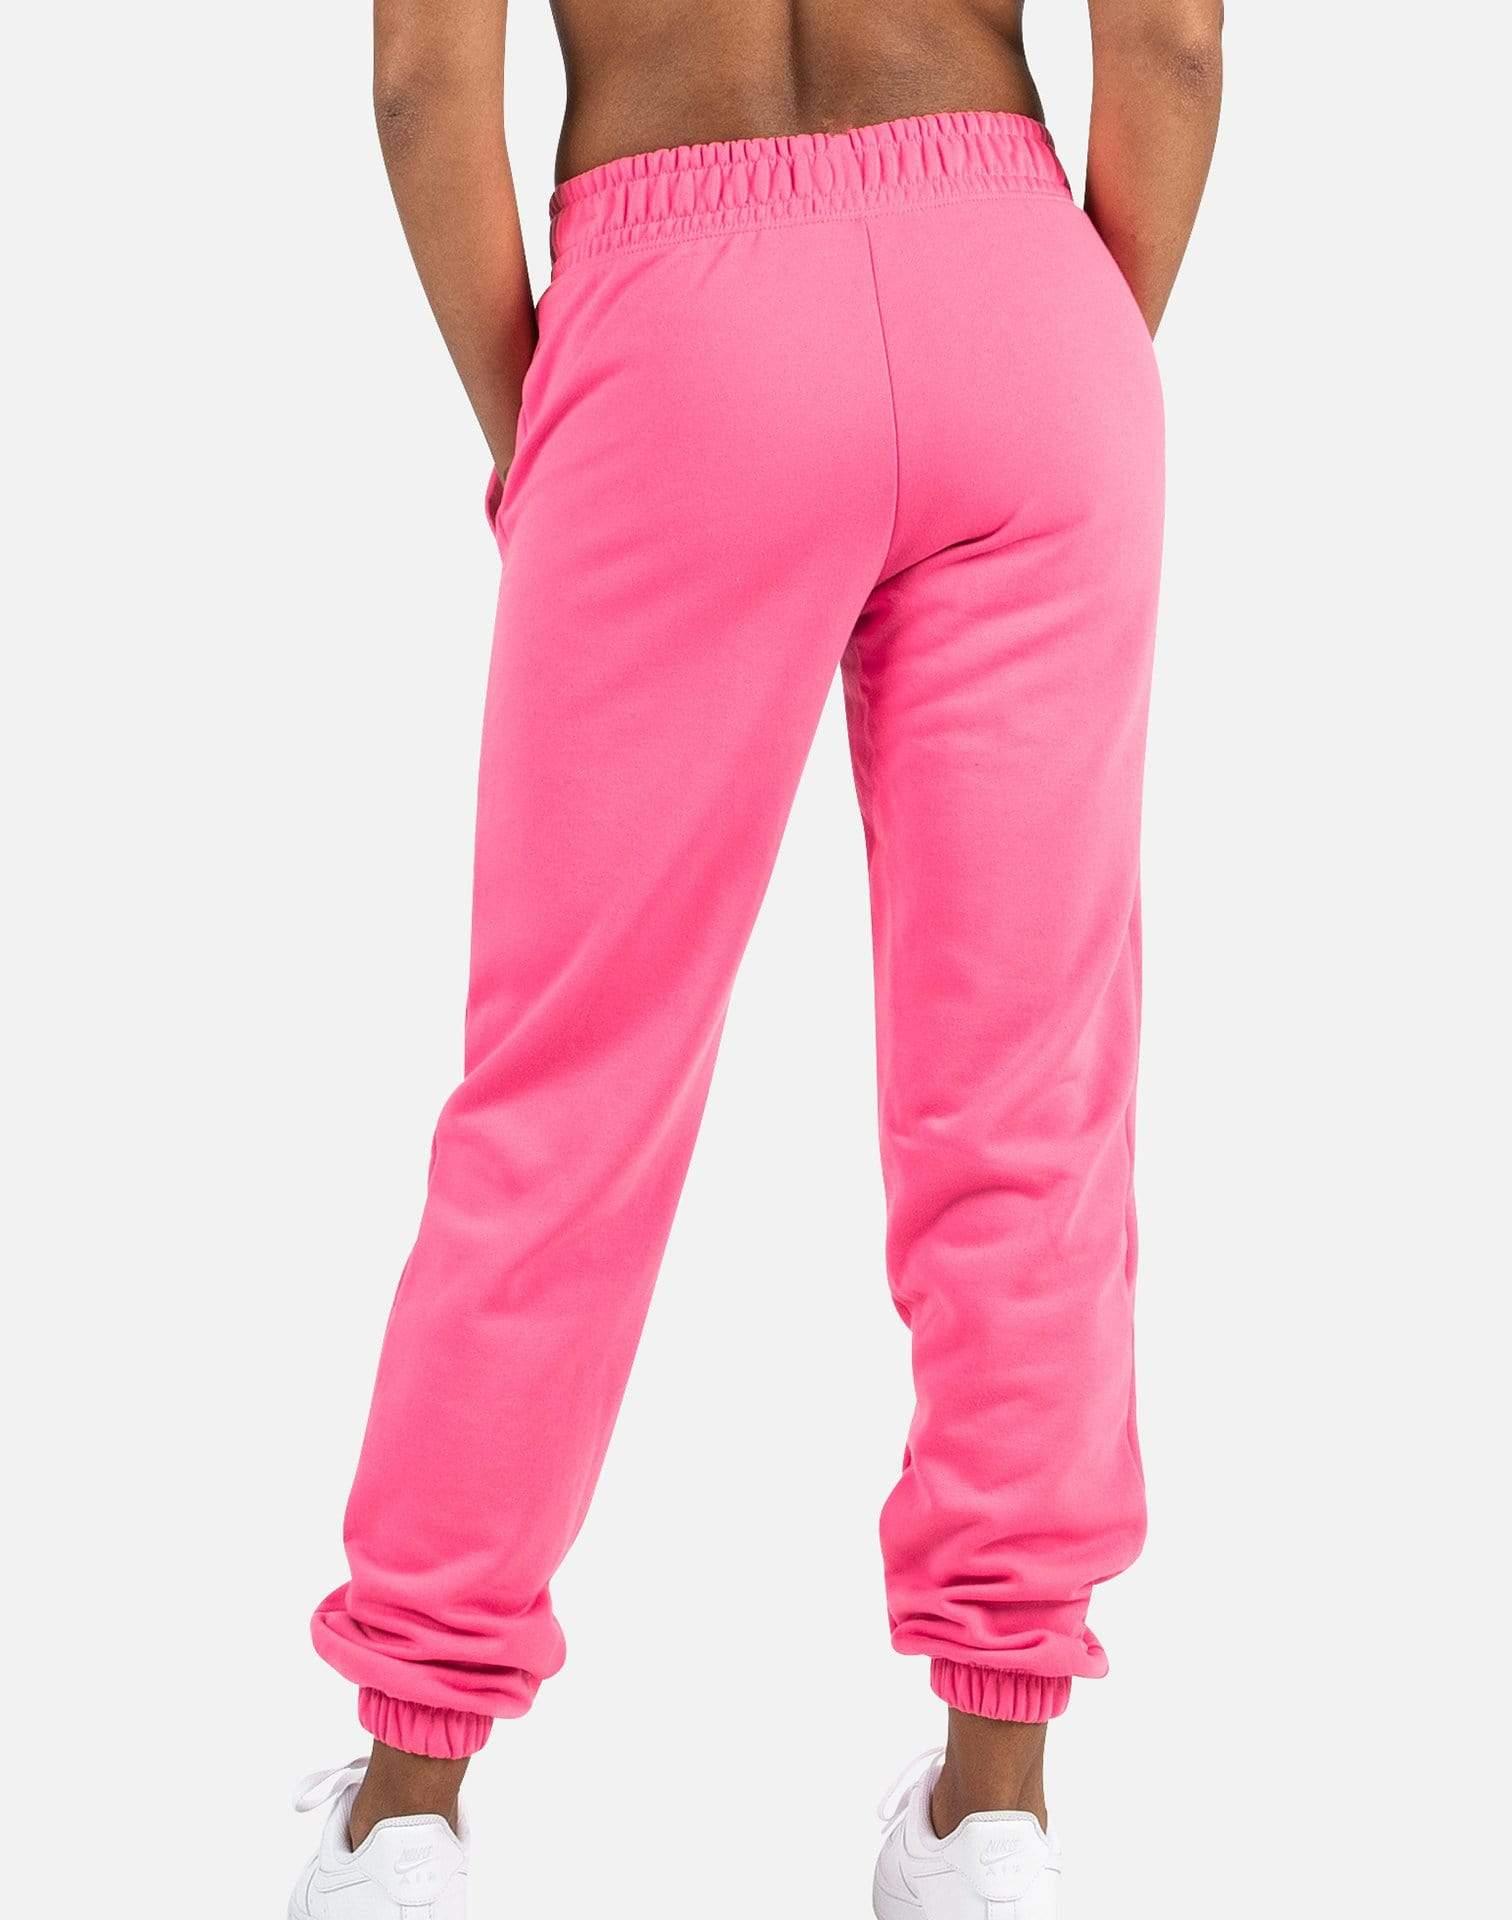 Nike Nsw Swoosh Fleece Pants in Pink - Lyst